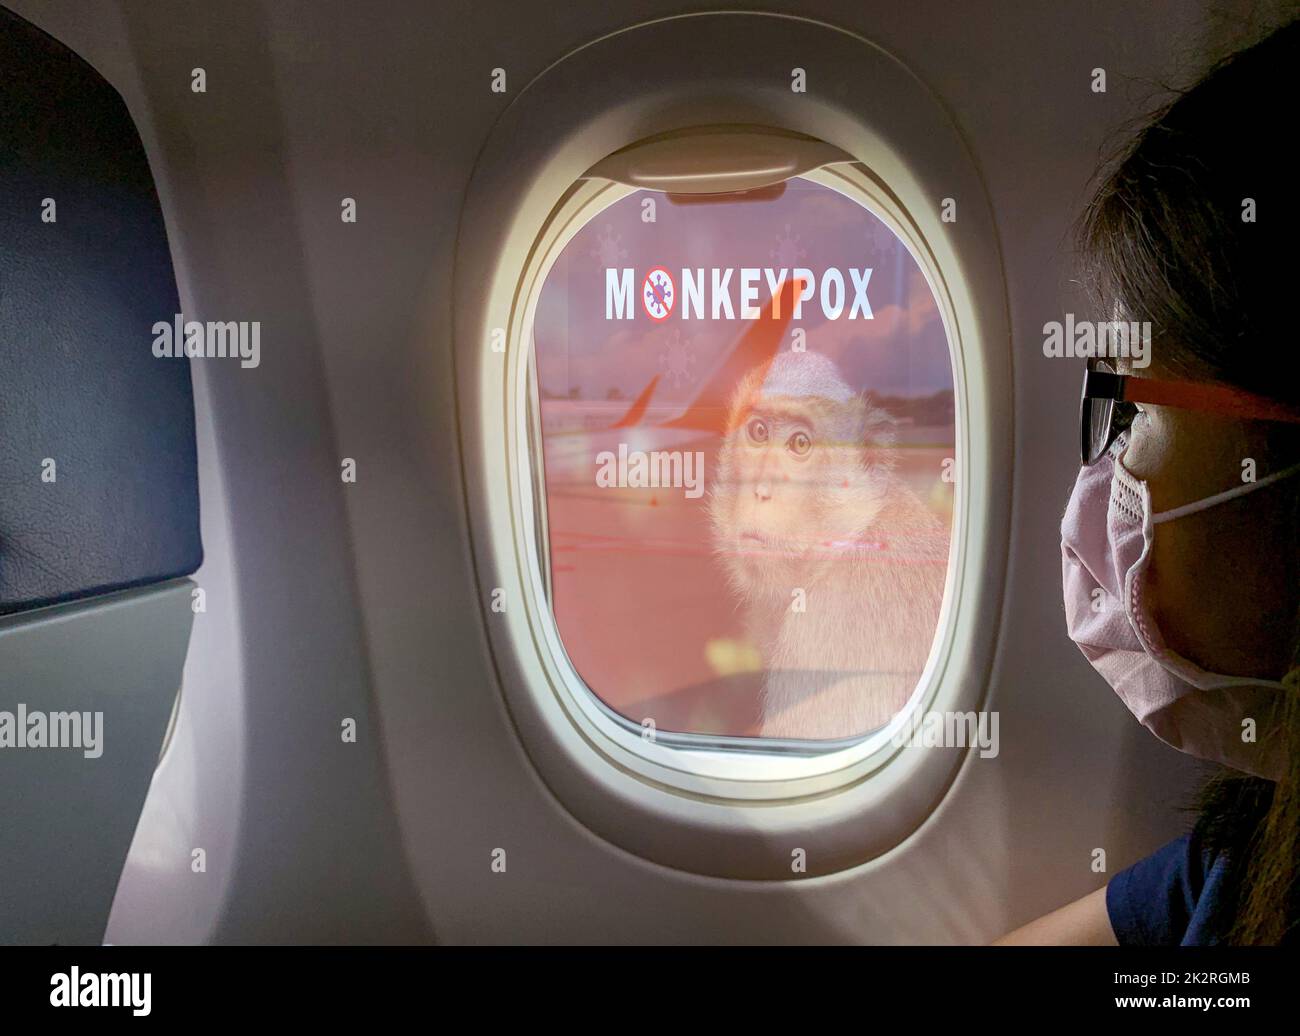 Donna indossare maschera chirurgica sedersi sul sedile del passeggero vicino alla finestra della cabina dell'aereo con concetto di epidemia di monkeypox. Monkeypox è causato dal virus monkeypox. Viaggiare in aereo durante l'epidemia di monkeypox. Foto Stock